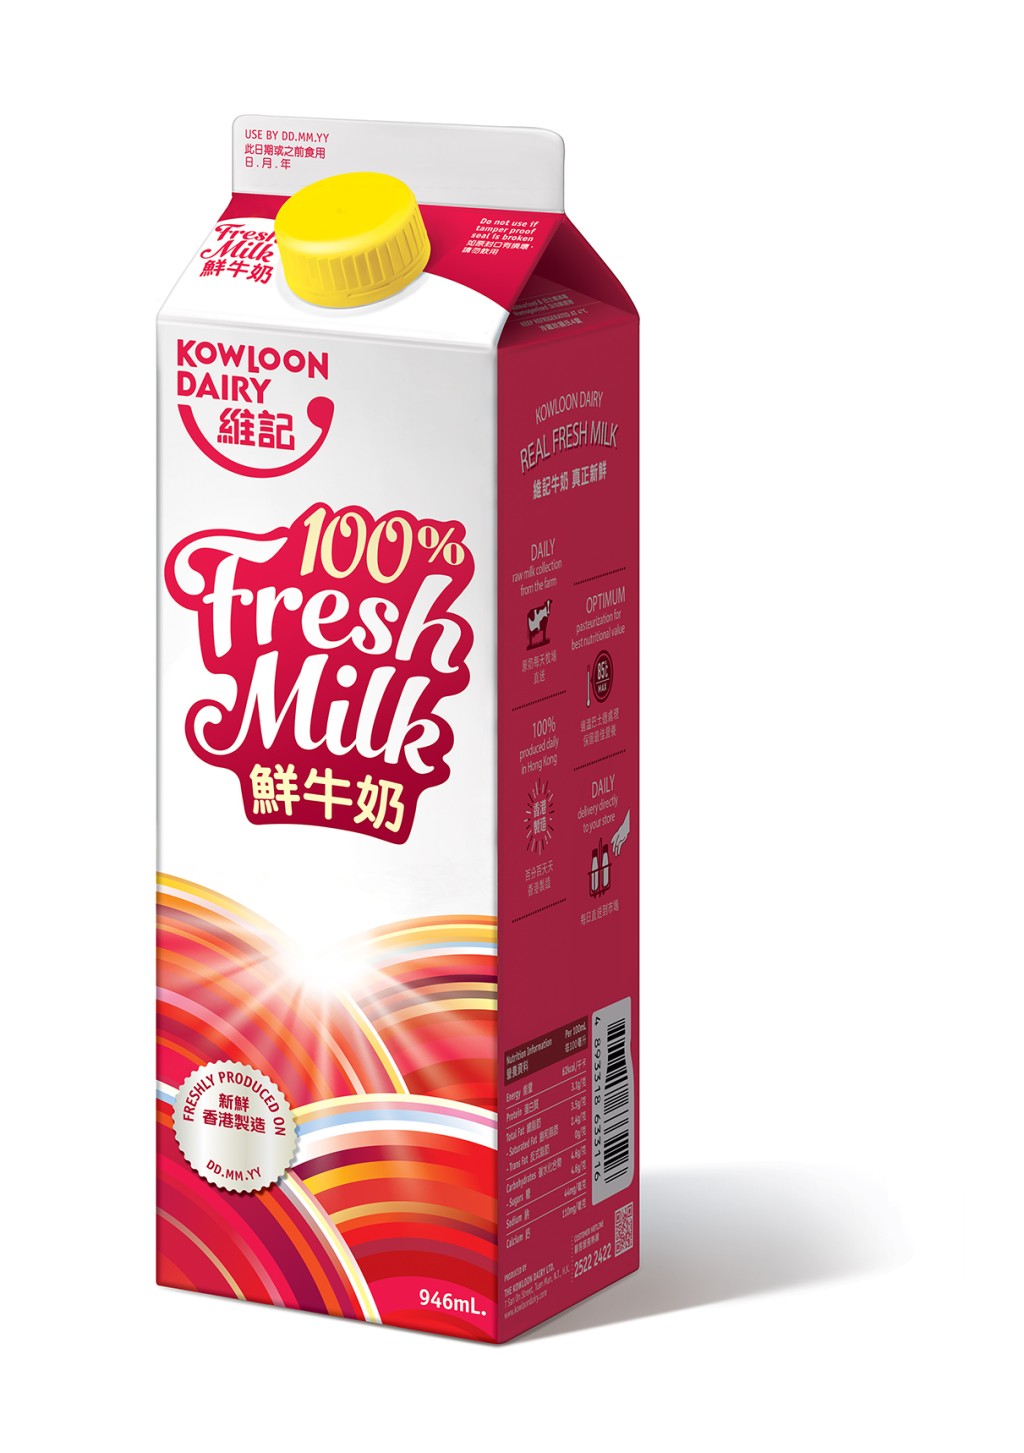 维记鲜牛奶946毫升折实价$40/2件，平均 $20/件（原价$50/2件）